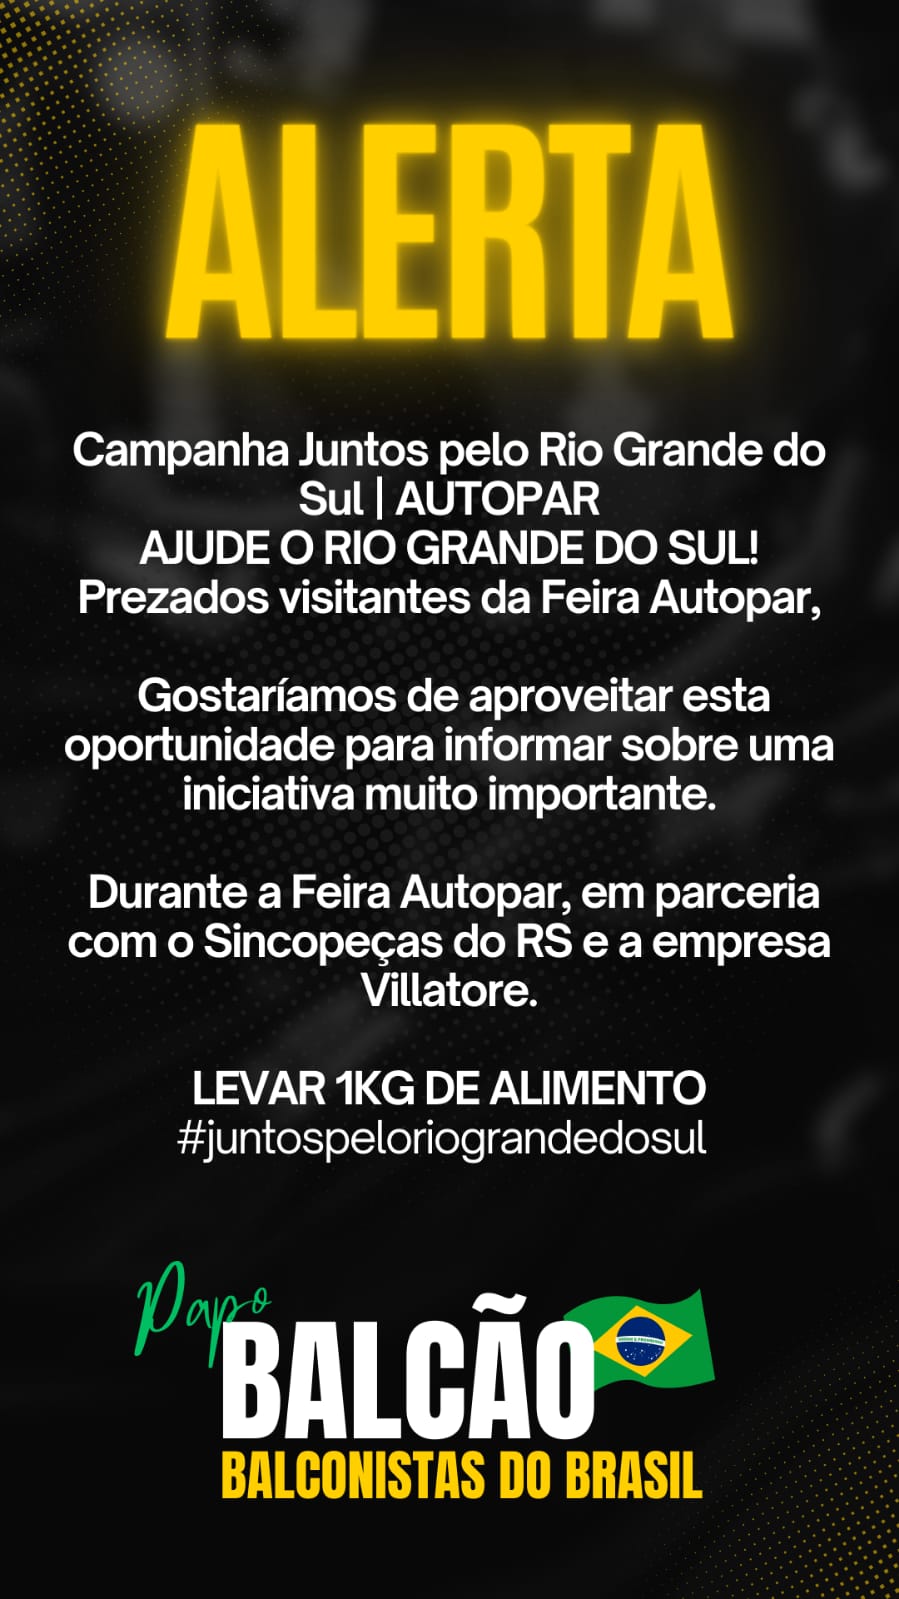 Aftermarket Automotivo mobiliza-se para ajudar municípios e desabrigados no Rio Grande do Sul